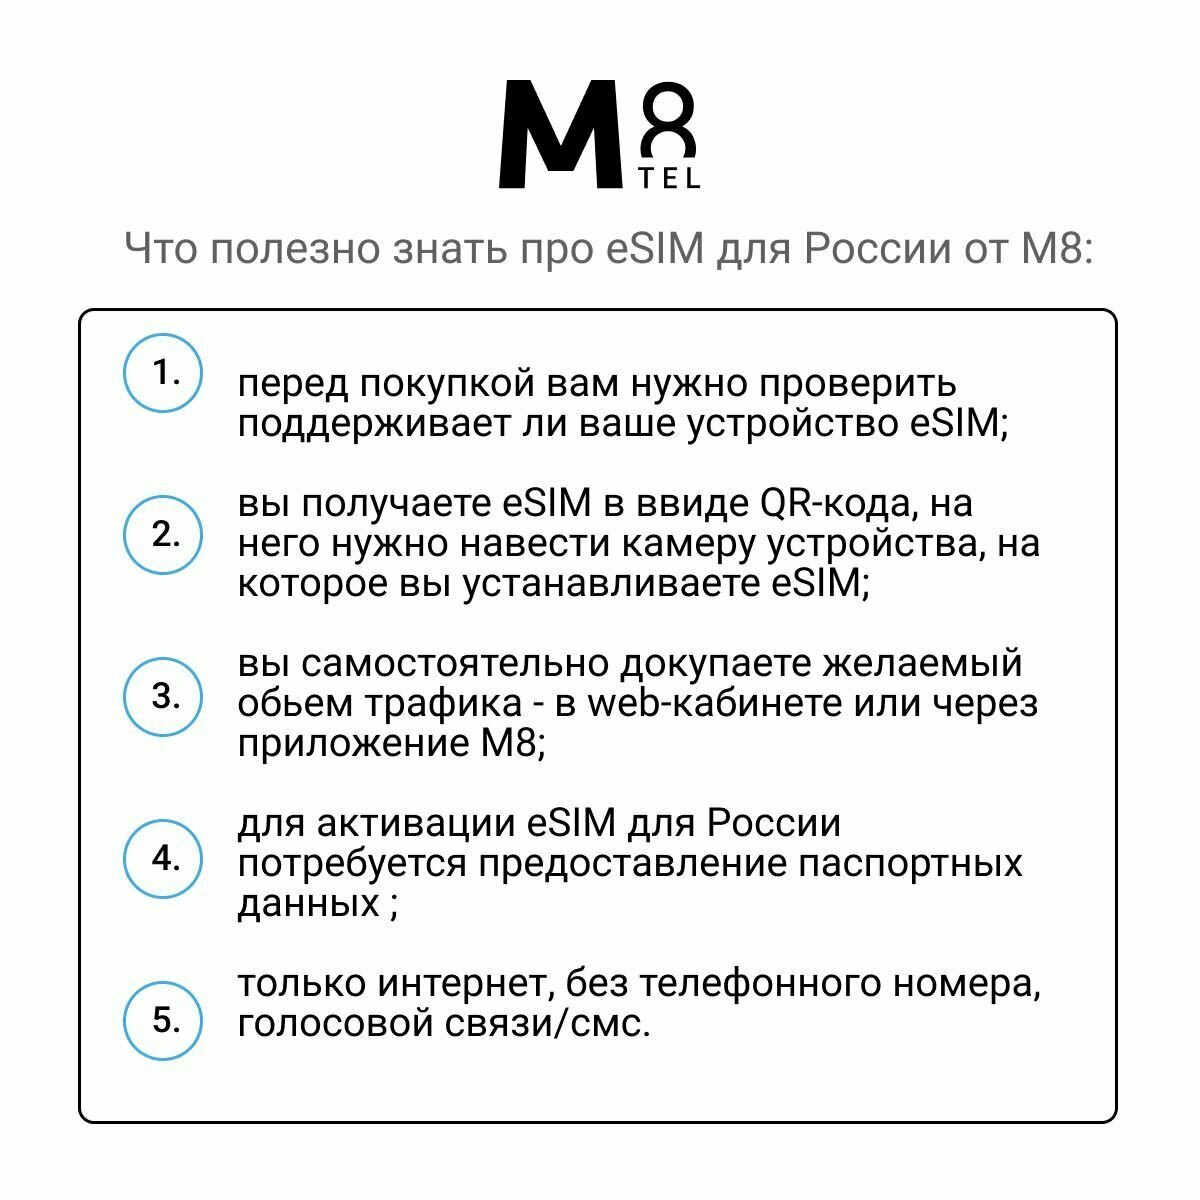 ESIM - электронная SIM-карта для России от М8 сеть МТС (виртуальная)